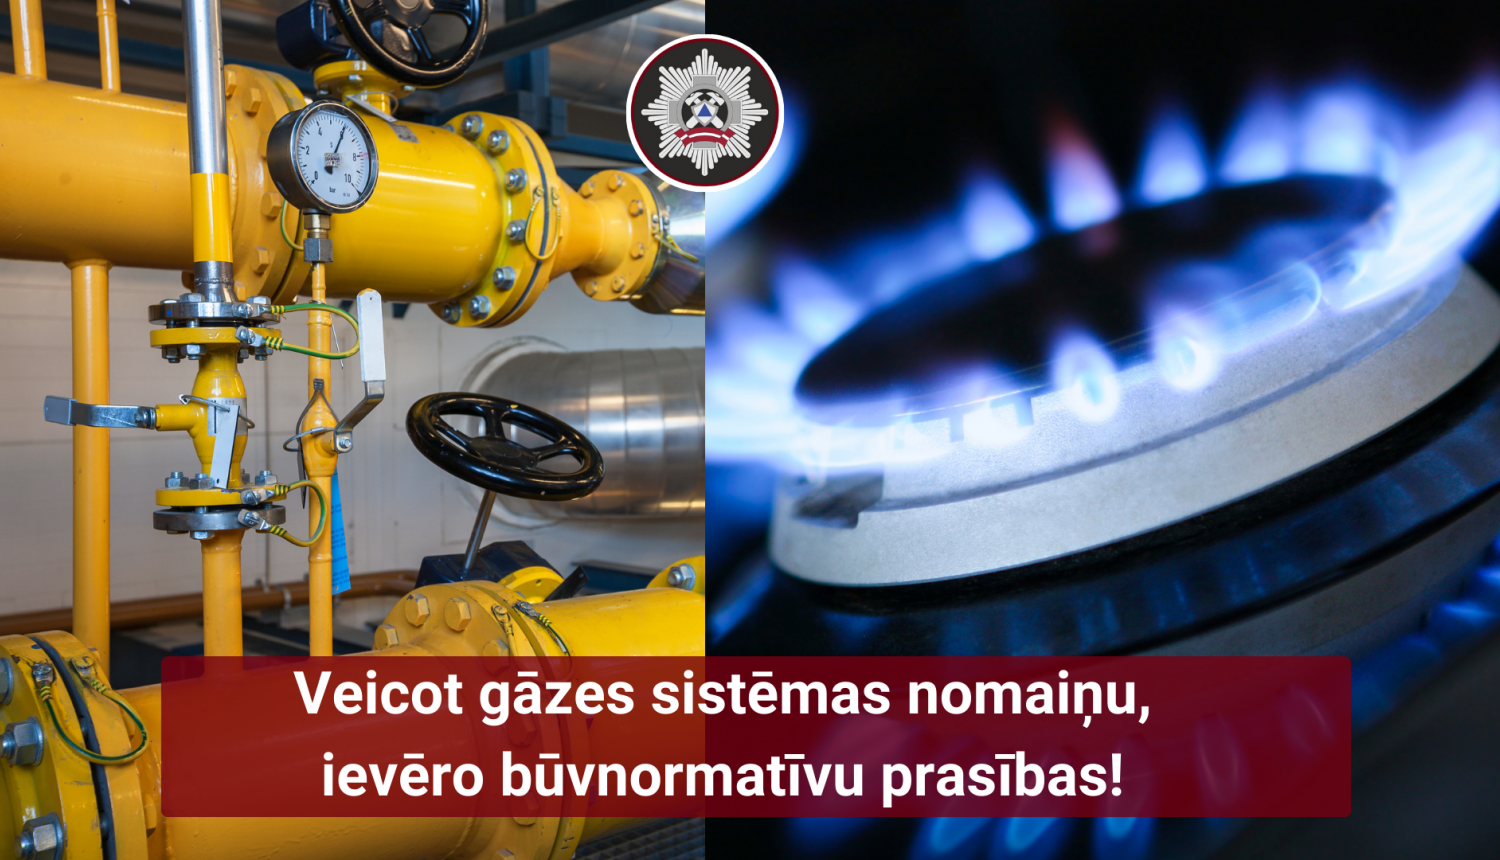 Kreisajā malā dzeltenas gāzesvada caurules, labajā malā aizdegta gāze uz gāzesplīts deg zilām liesmām. Apakšā teksts: Veicot gāzes sistēmas nomaiņu, ievēro būvnormatīvu prasības! 